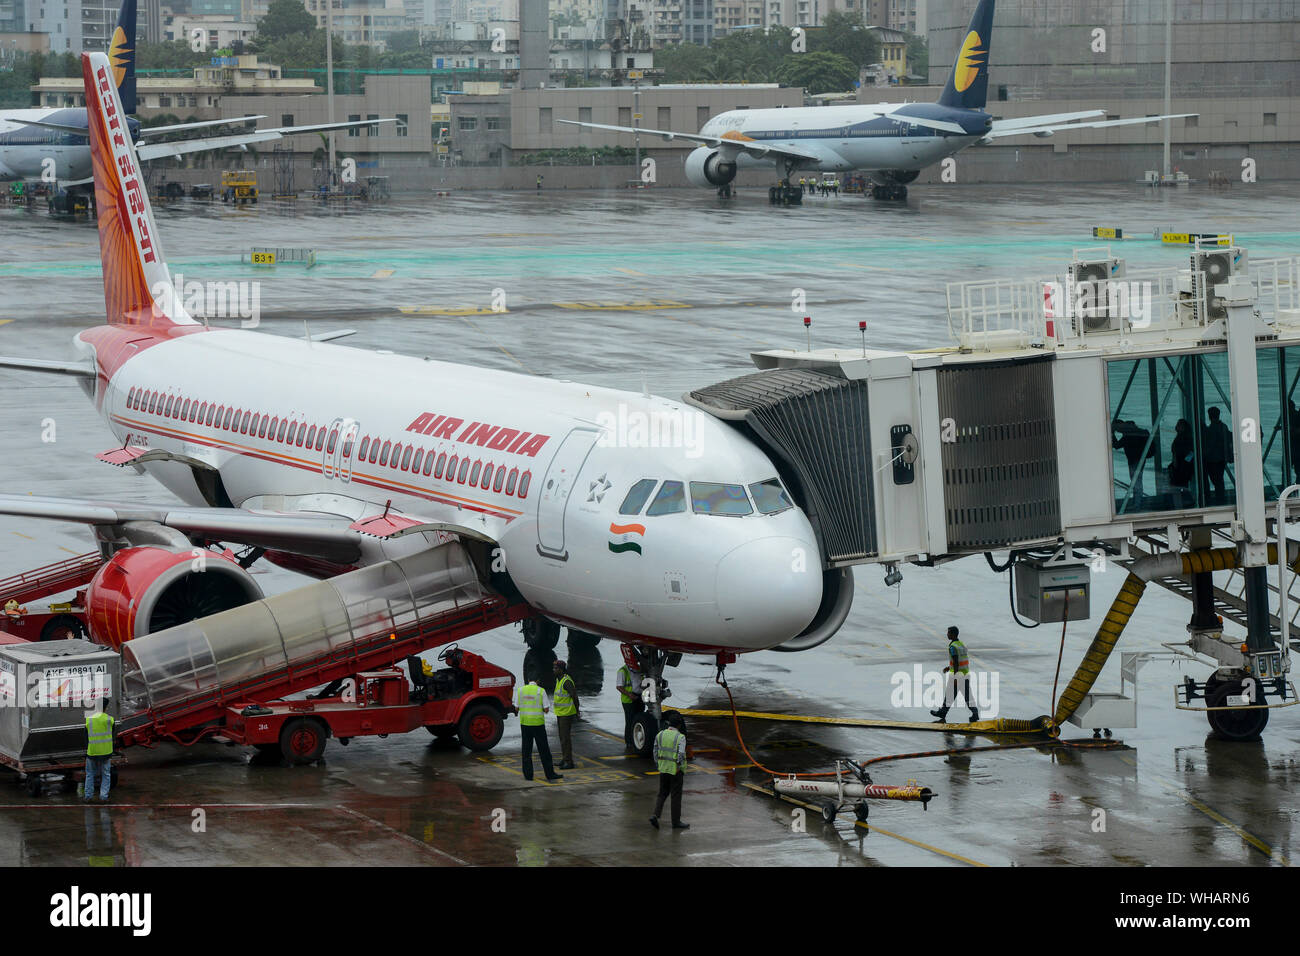 L'Inde, Mumbai , l'Aéroport International Chatrapati Shivaji, Airbus d'Air India, du personnel au sol de l'équipe de service et sur l'embarquement des passagers à bord, le pont derrière Mumbai skyline et les avions de ligne aérienne privée Jet Airways qui s'est rendu dans le cadre de l'insolvabilité en 2019 Banque D'Images